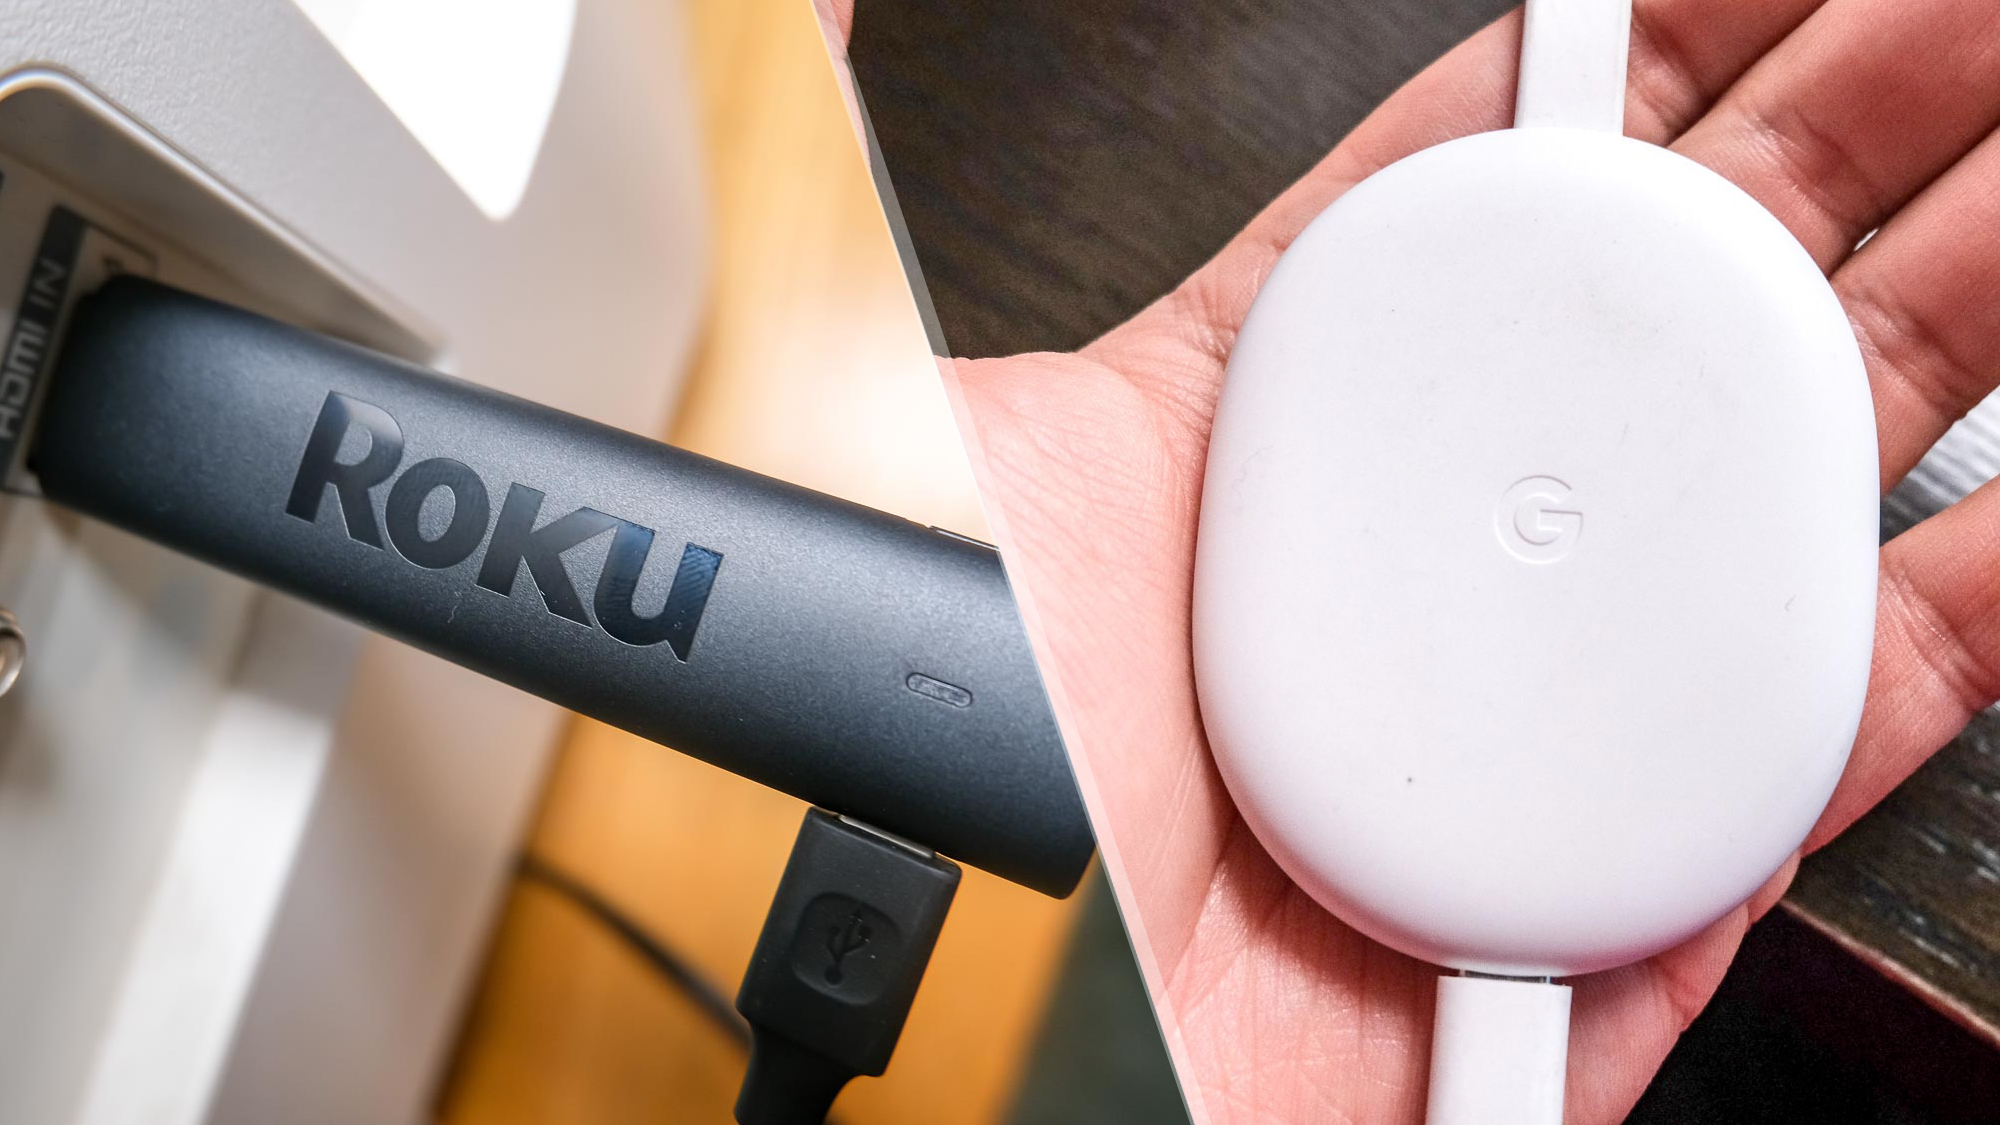 7 diferencias entre Roku y Chromecast: ventajas y desventajas de cada uno